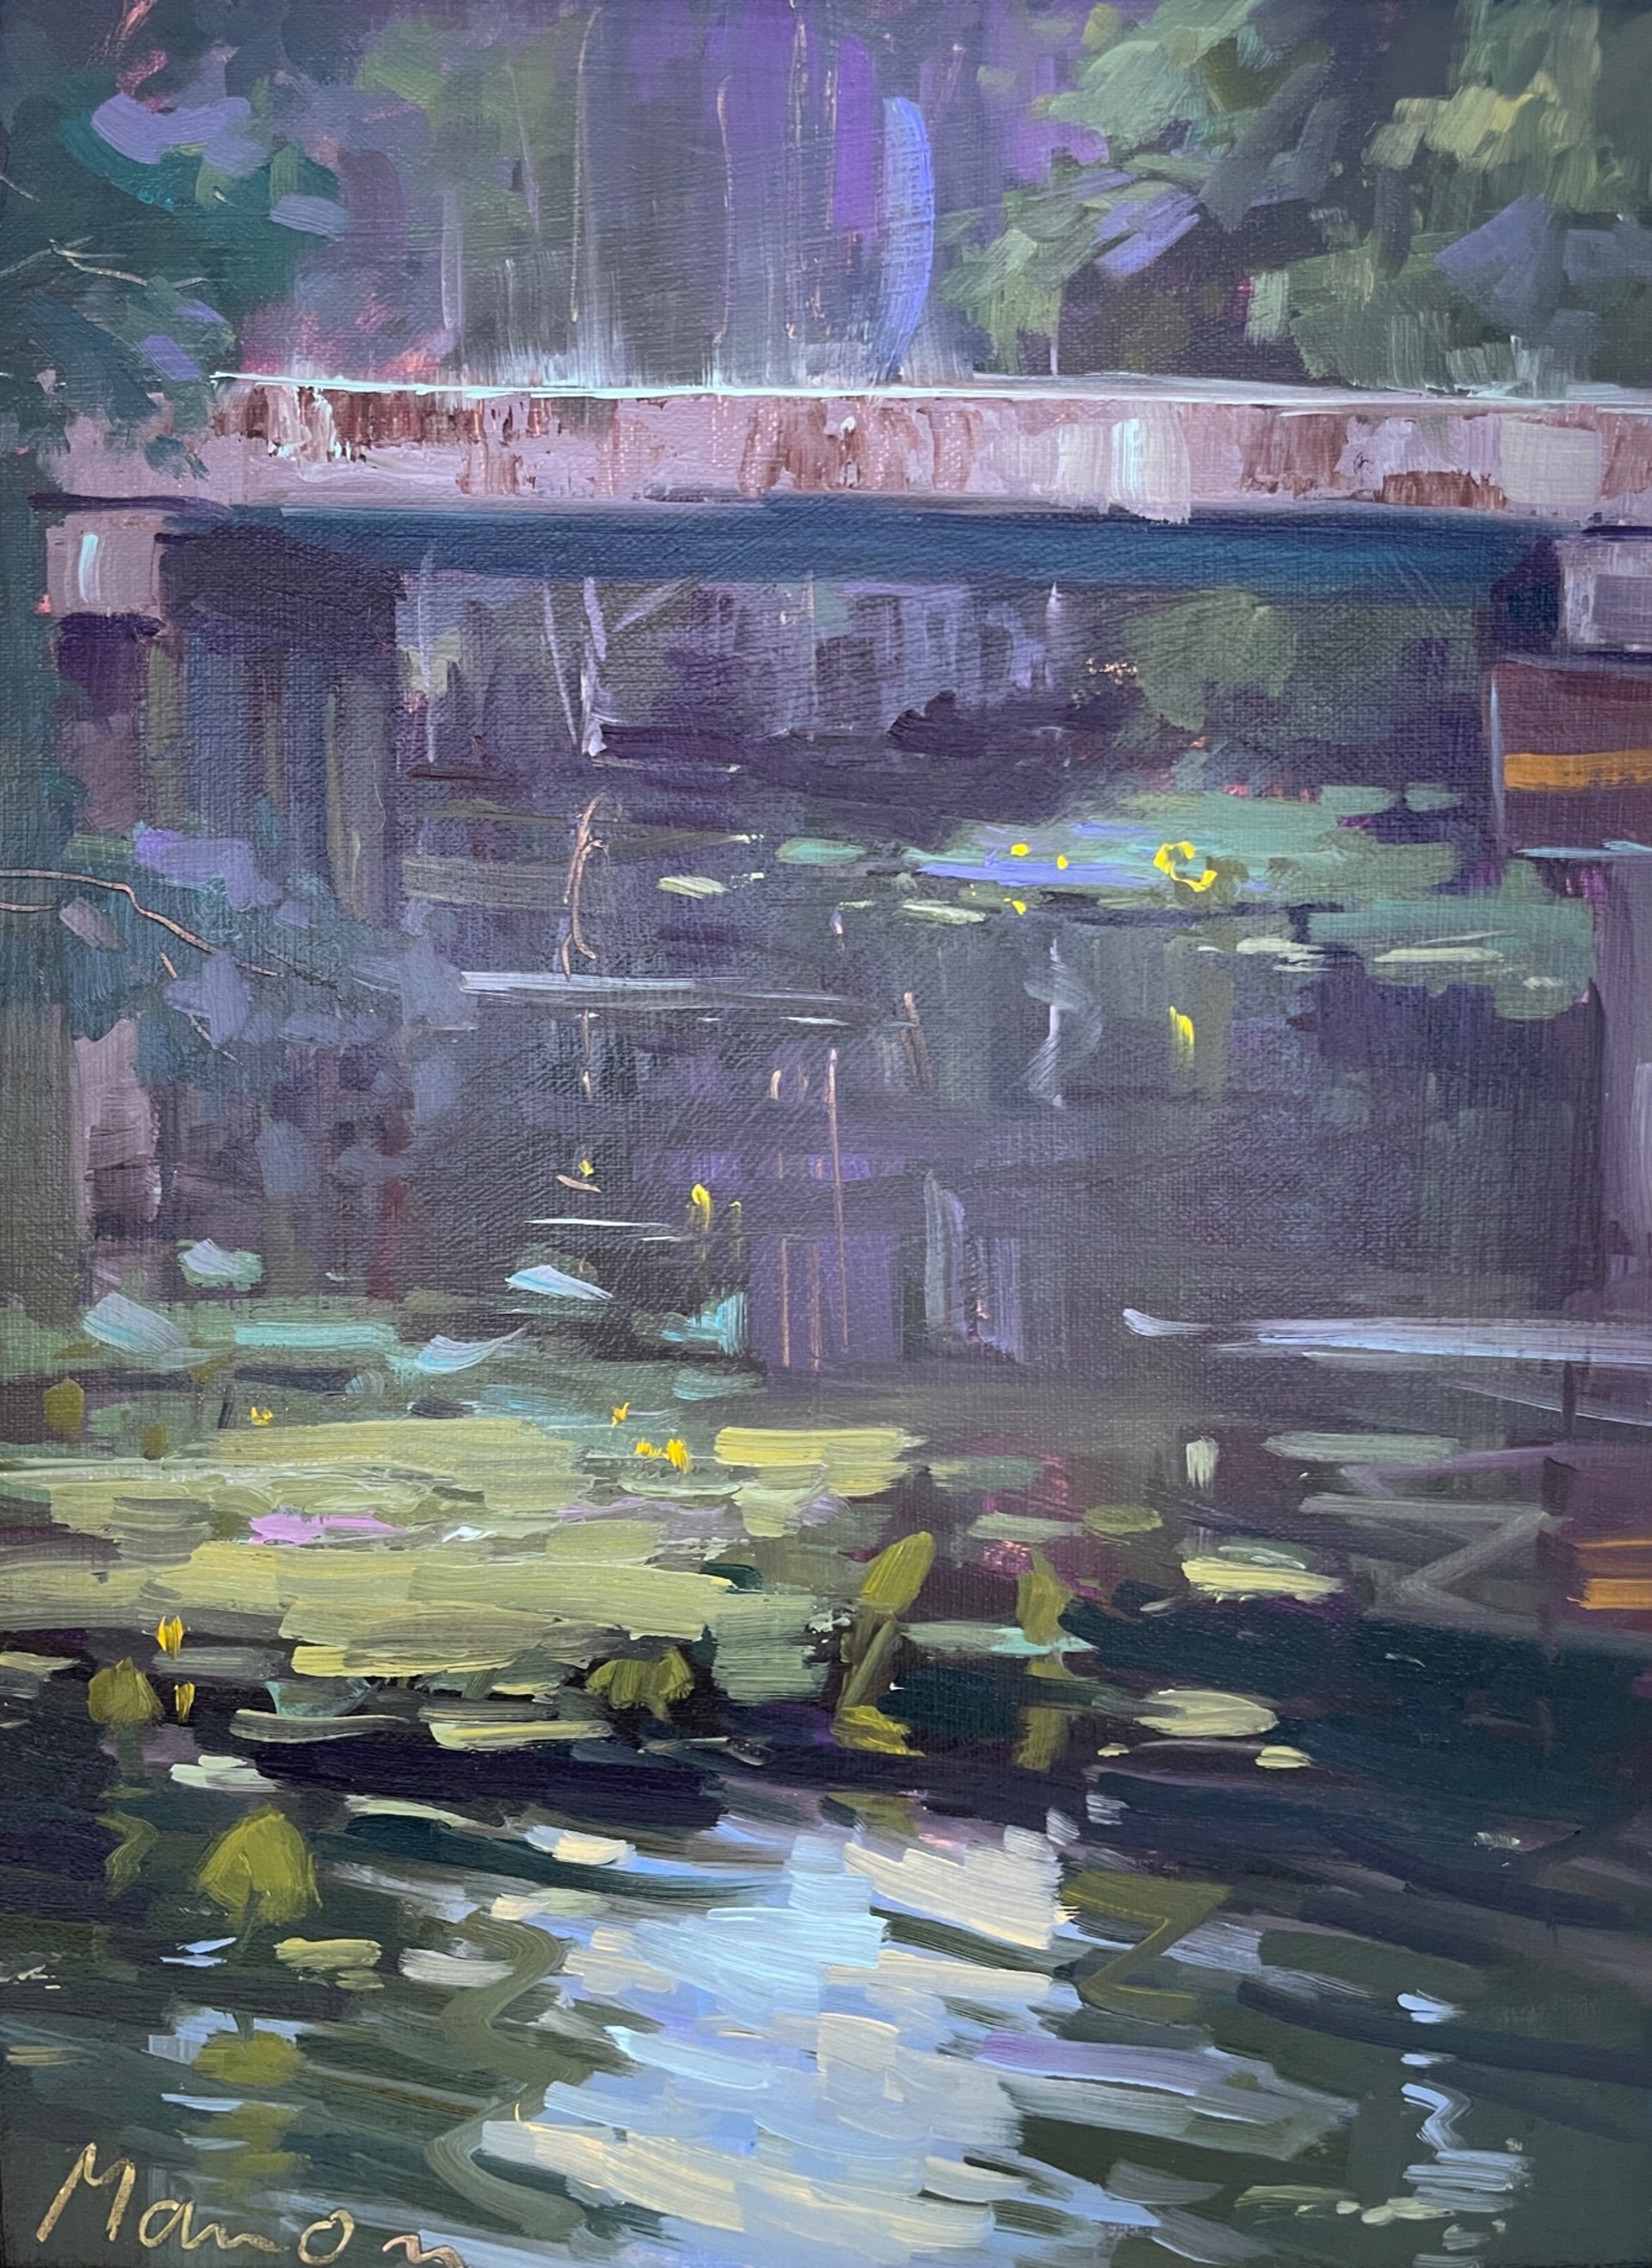 Water Under the Bridge by Manon Sander